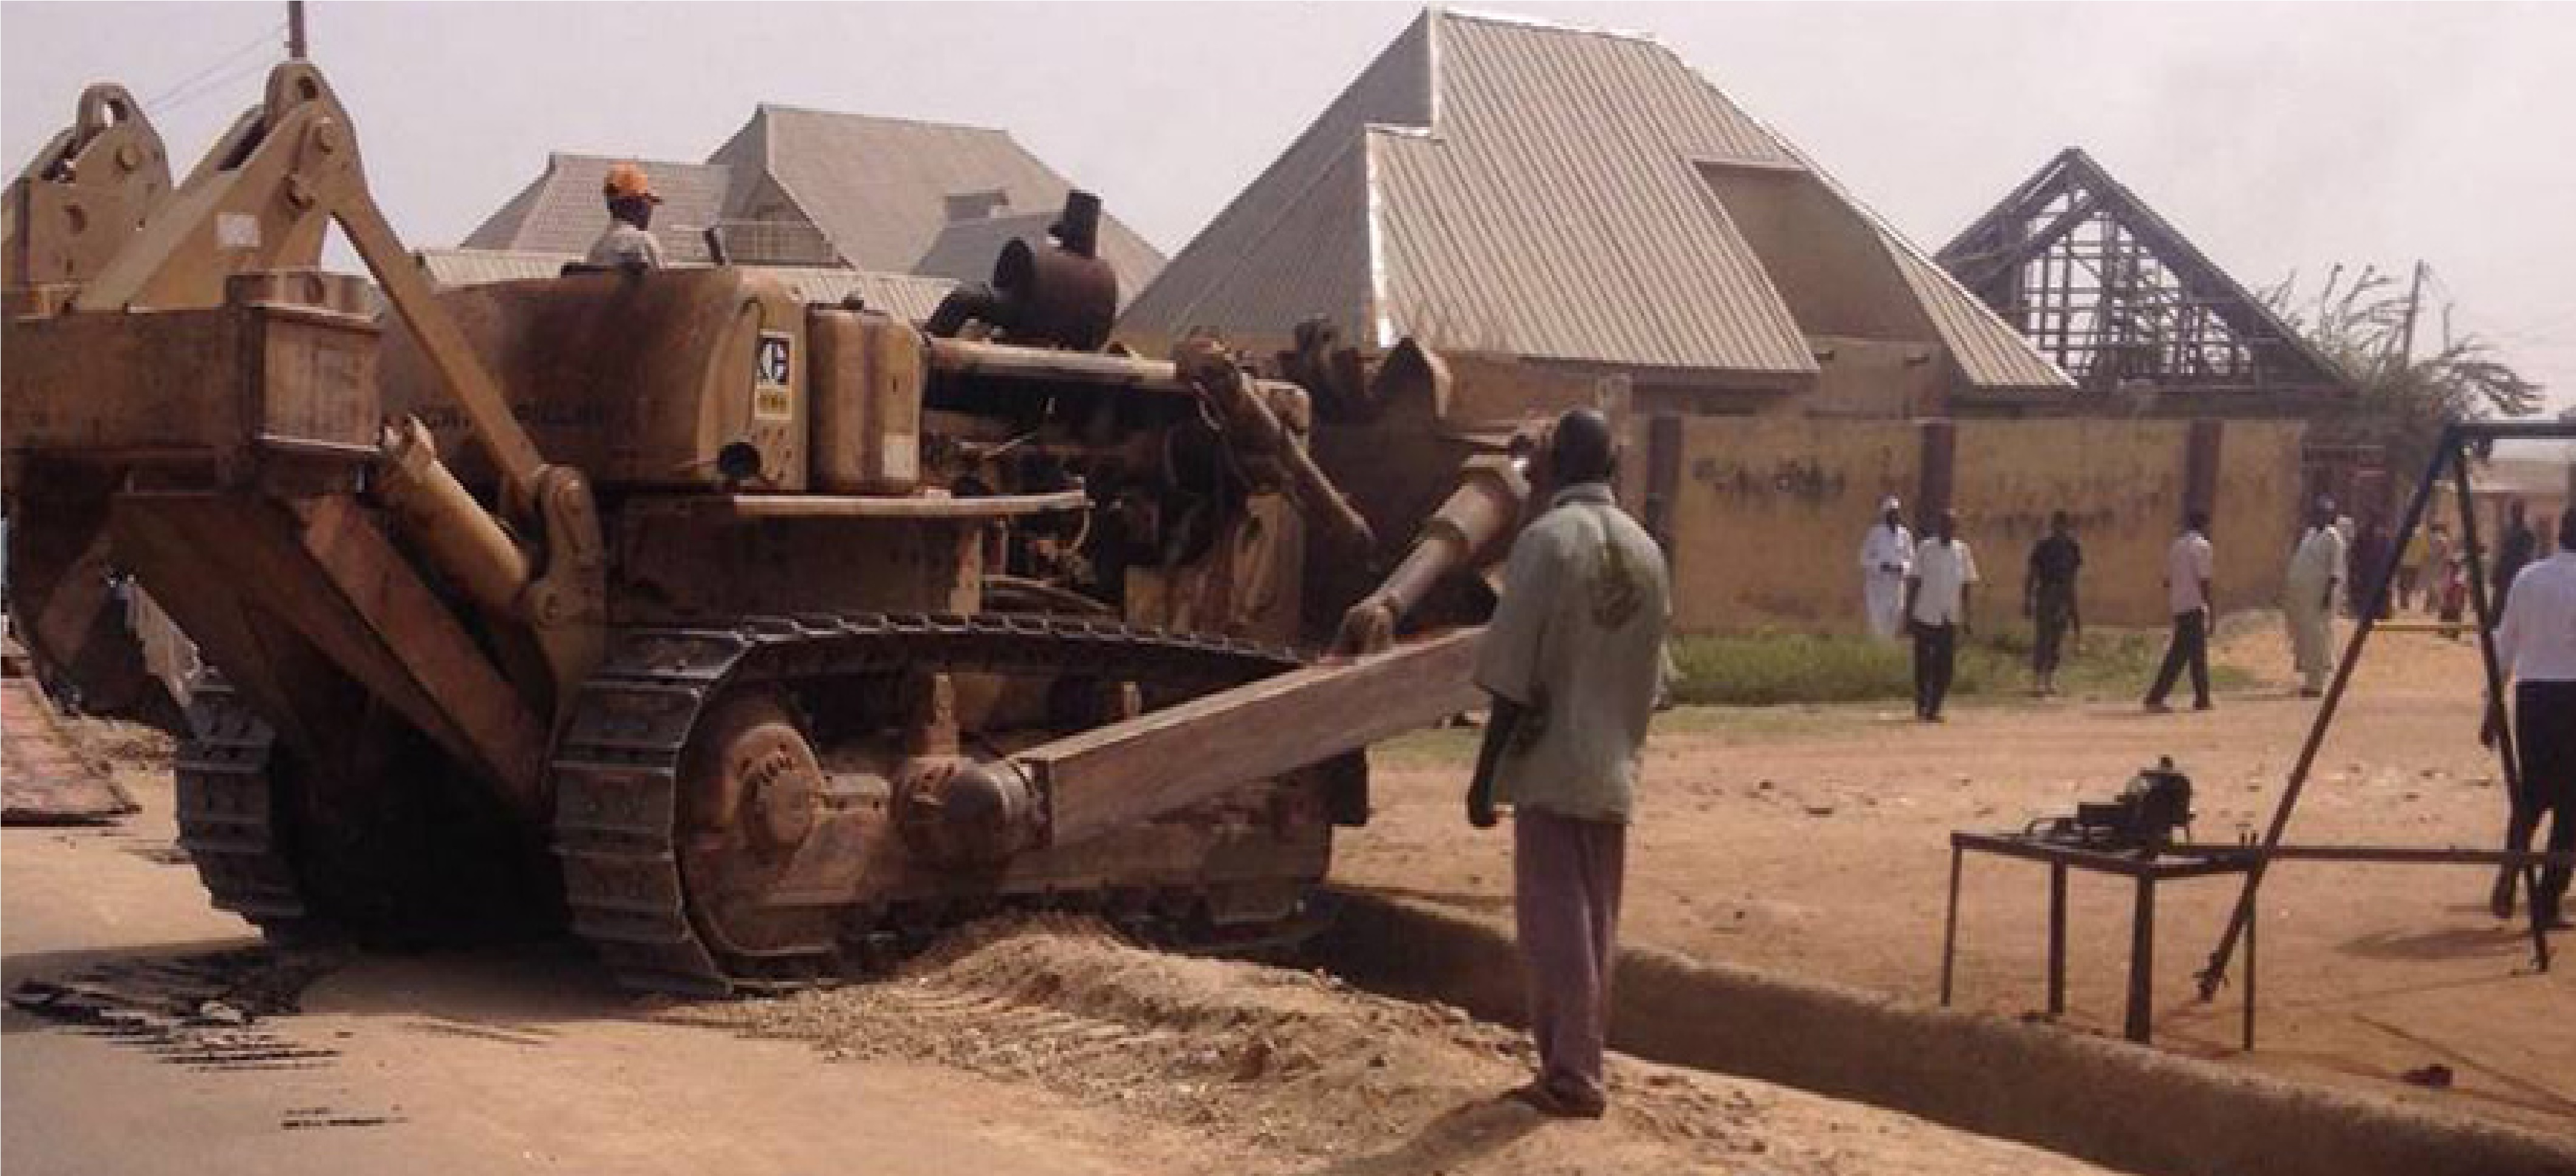 Nigeria destruye dos centros pertenecientes a musulmanes chiíes